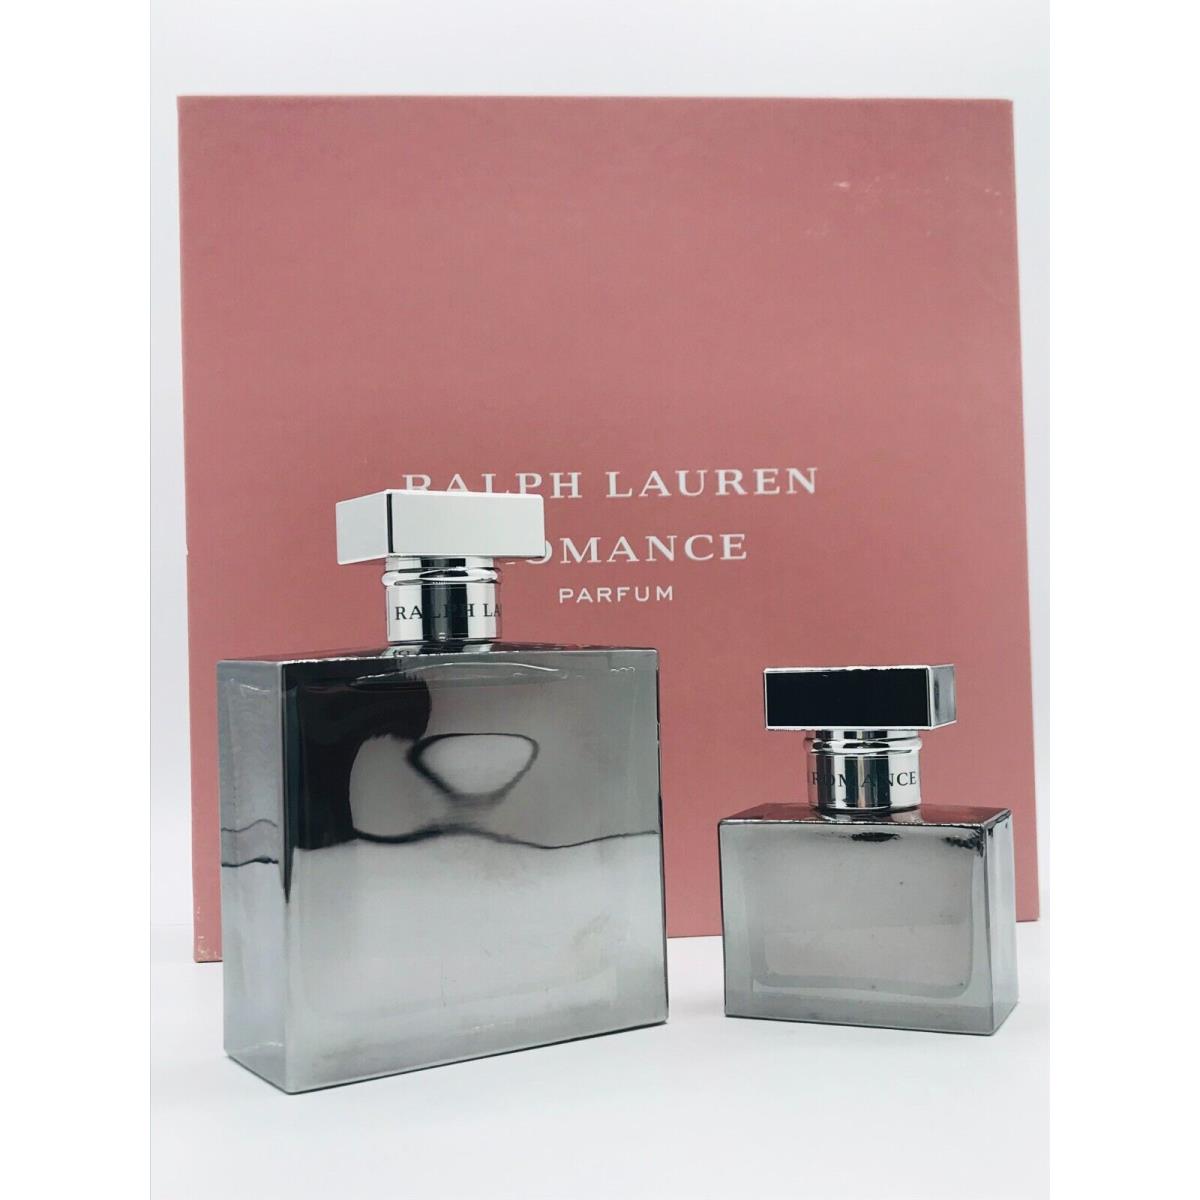 Ralph Lauren Romance Parfum